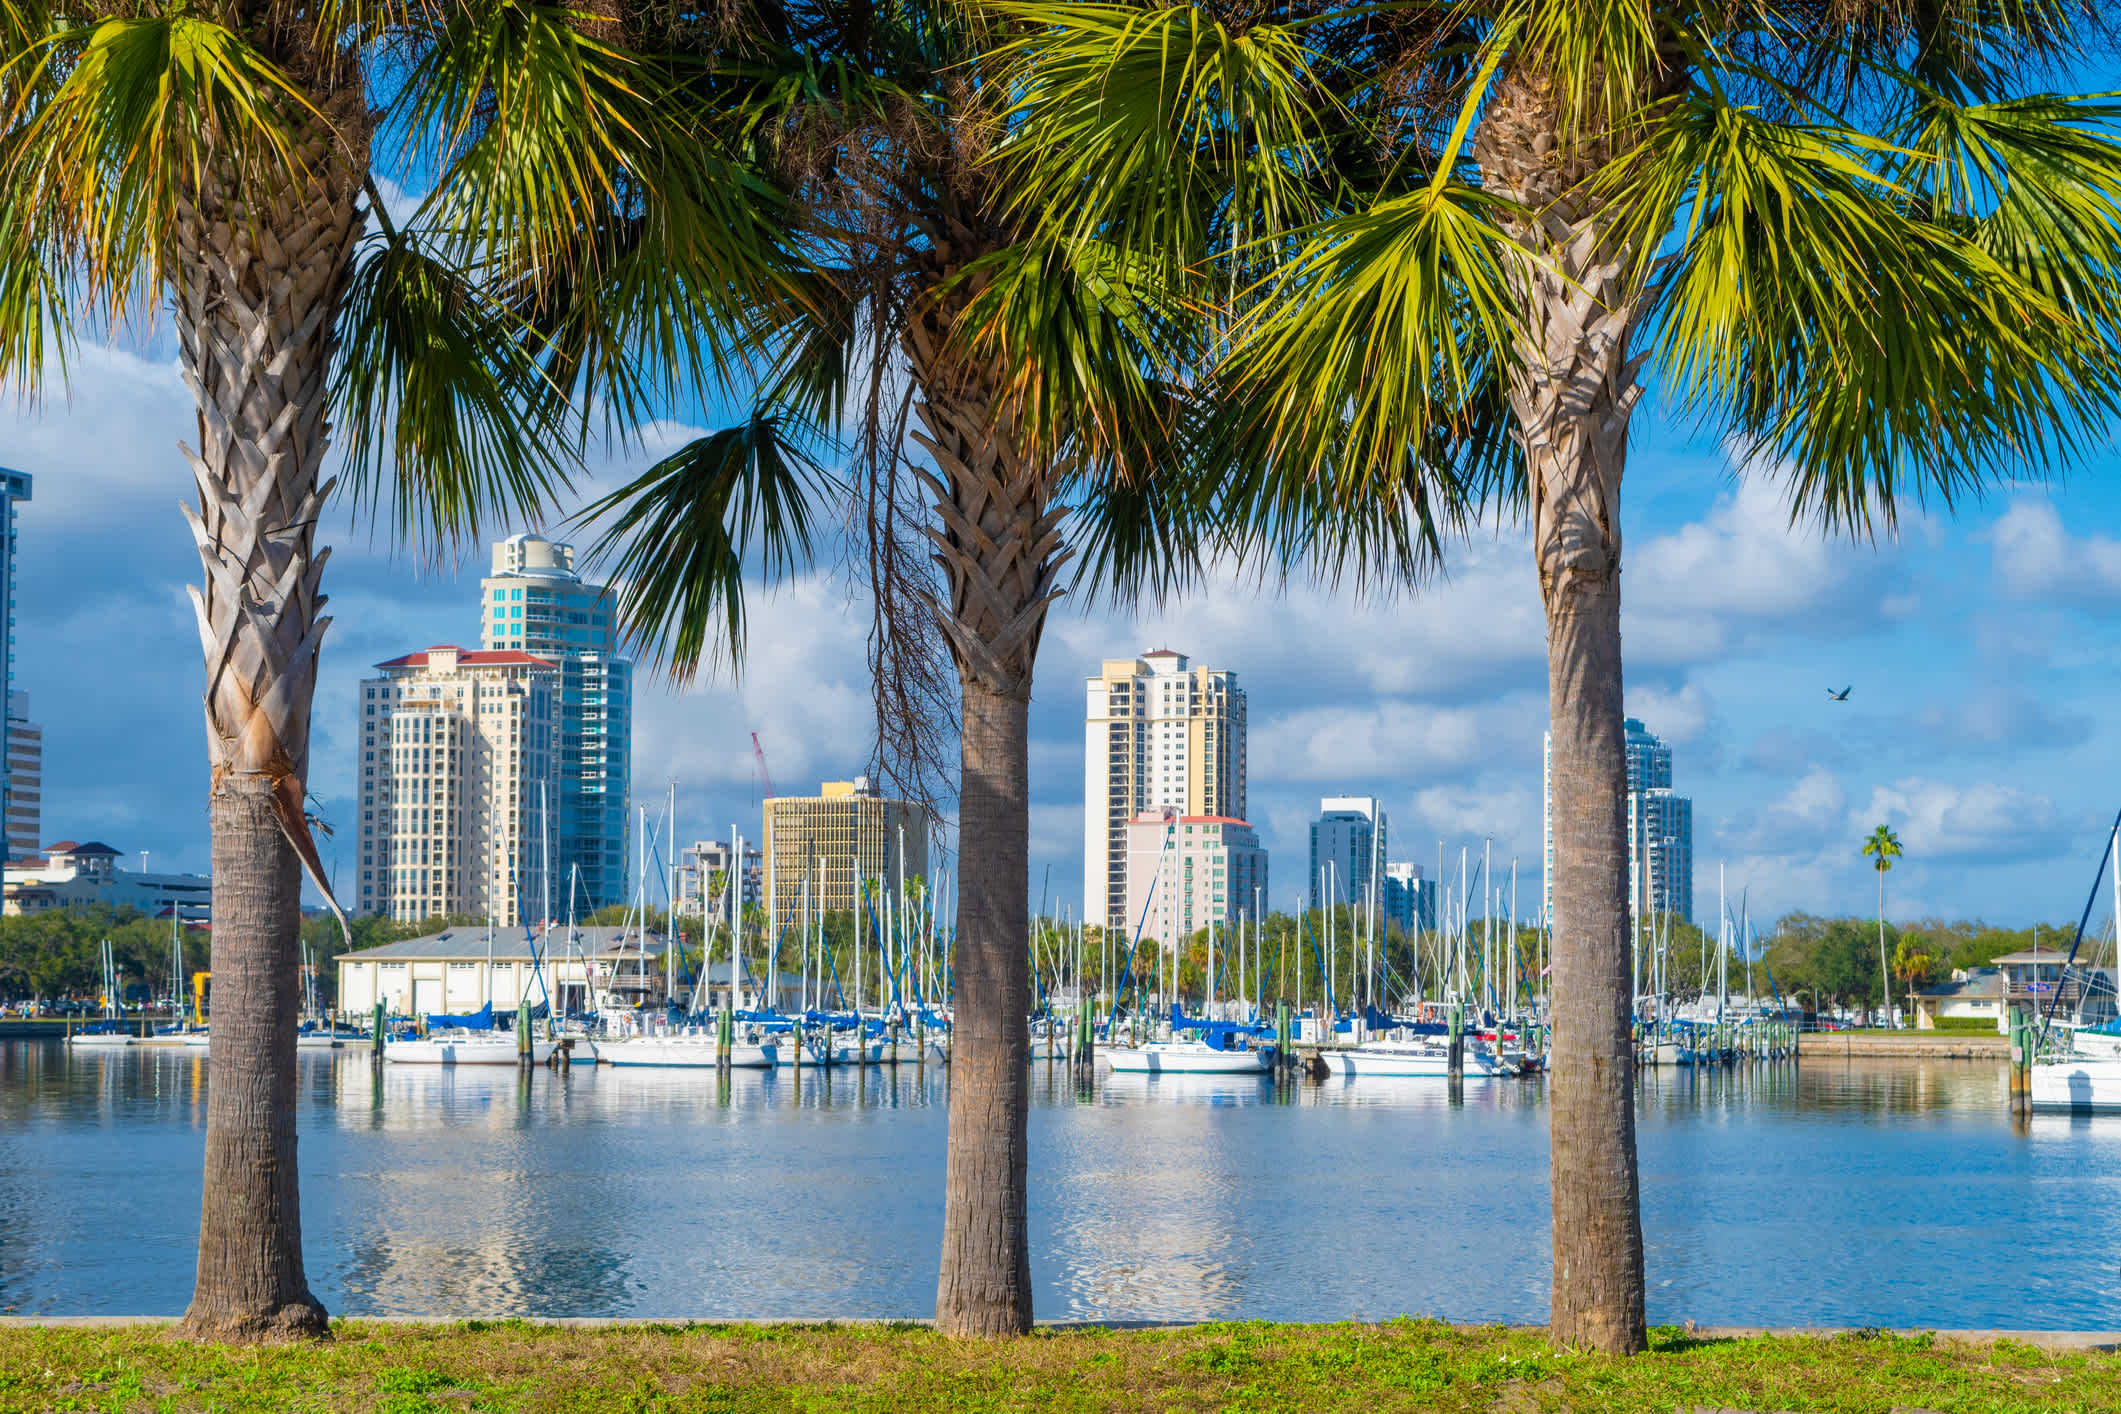 Vue sur les palmiers et le port de St. Petersburg en Floride aux États-Unis